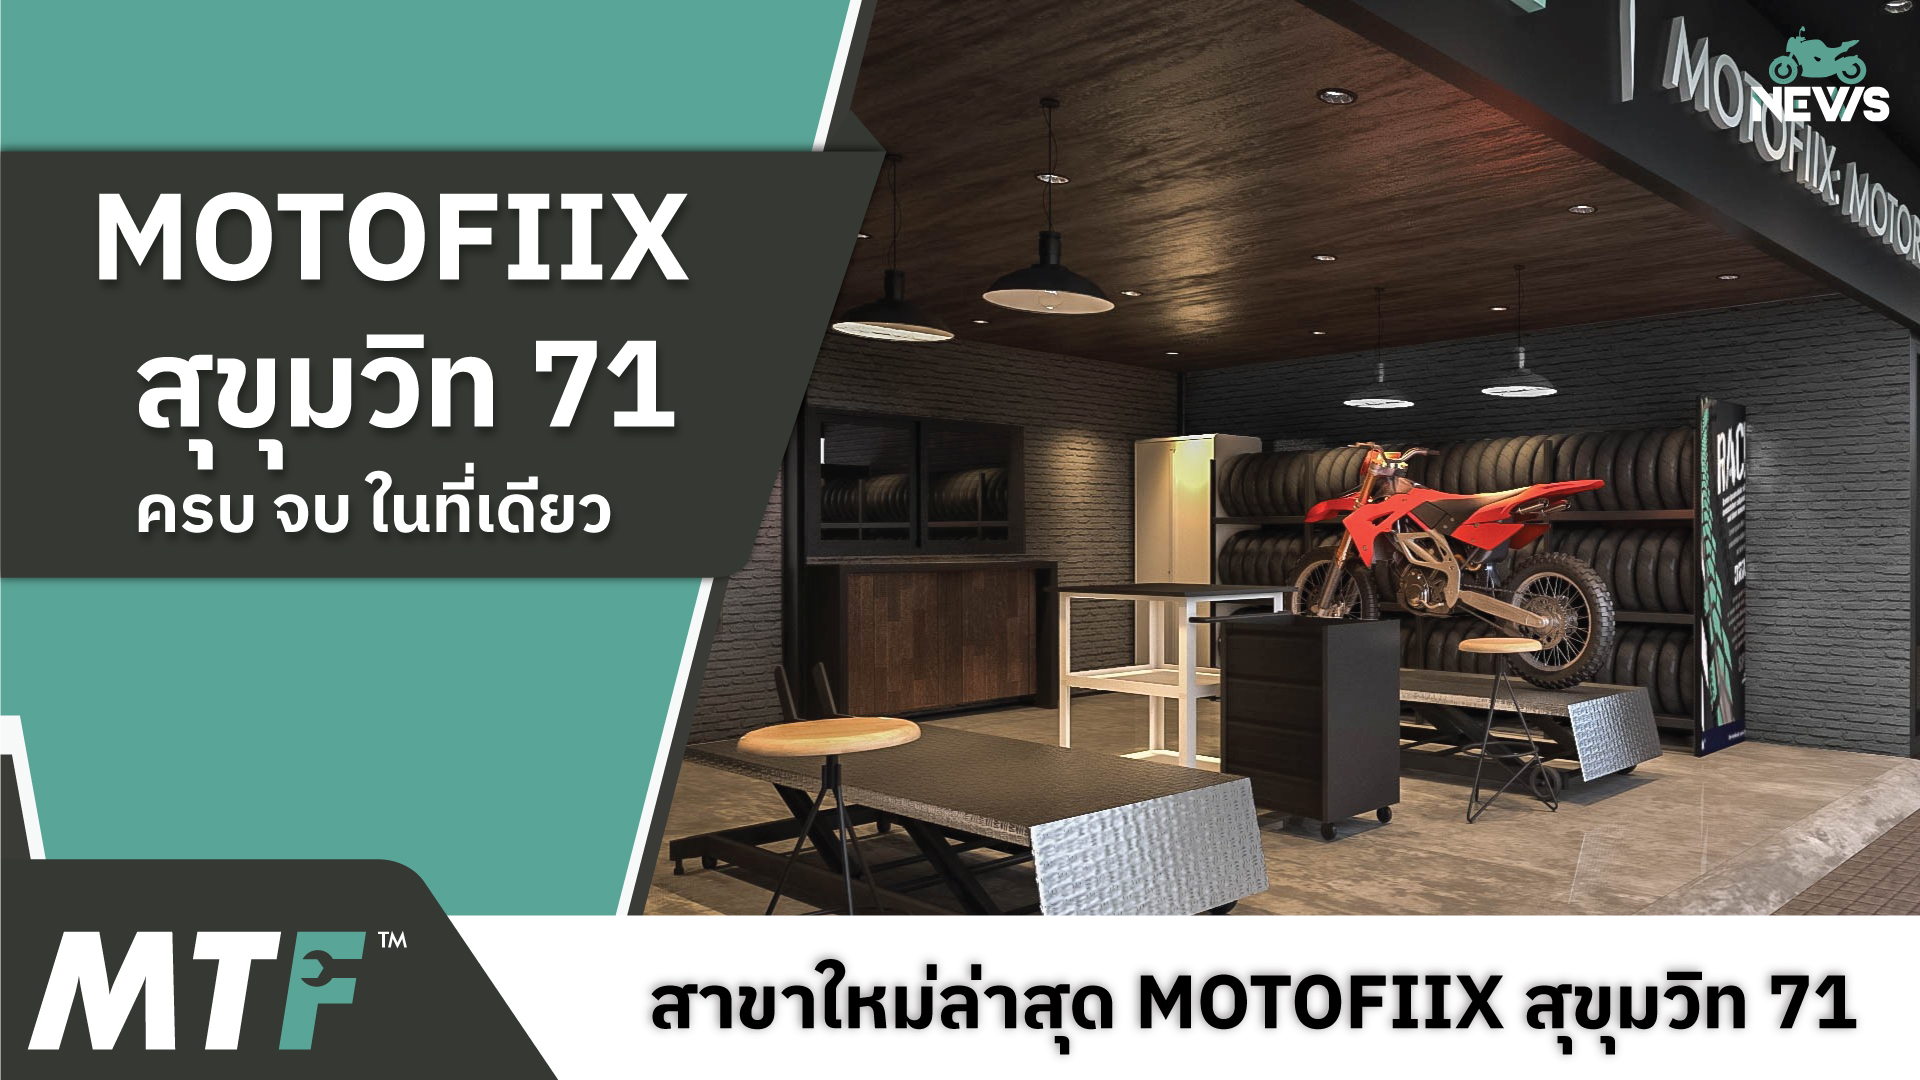 เปิดให้บริการแล้ว MOTOFIIX สุขุมวิท 71 ร้านซ่อมบำรุงรักษารถมอเตอร์ไซค์ และจำหน่ายอุปกรณ์มอเตอร์ไซค์